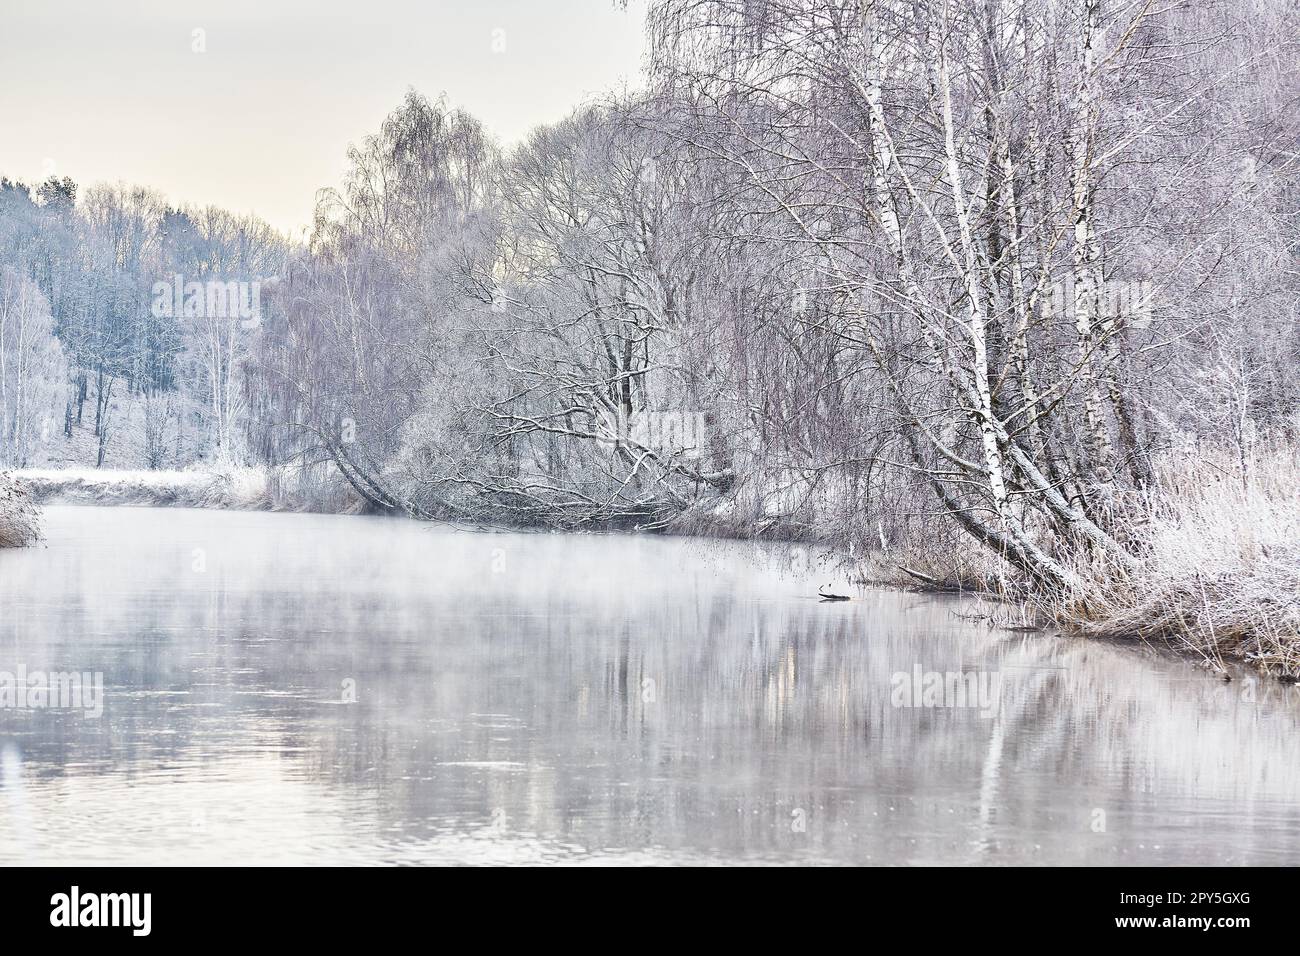 Schnee im Winter-Naturpark. Waldlandschaft bei kaltem Wetter, Bäume spiegeln sich im Wasser. Frost auf Gras, Stock. Januar-Nebel. Waldfluss Sonnenaufgang. Ländlicher Raum in Europa Stockfoto